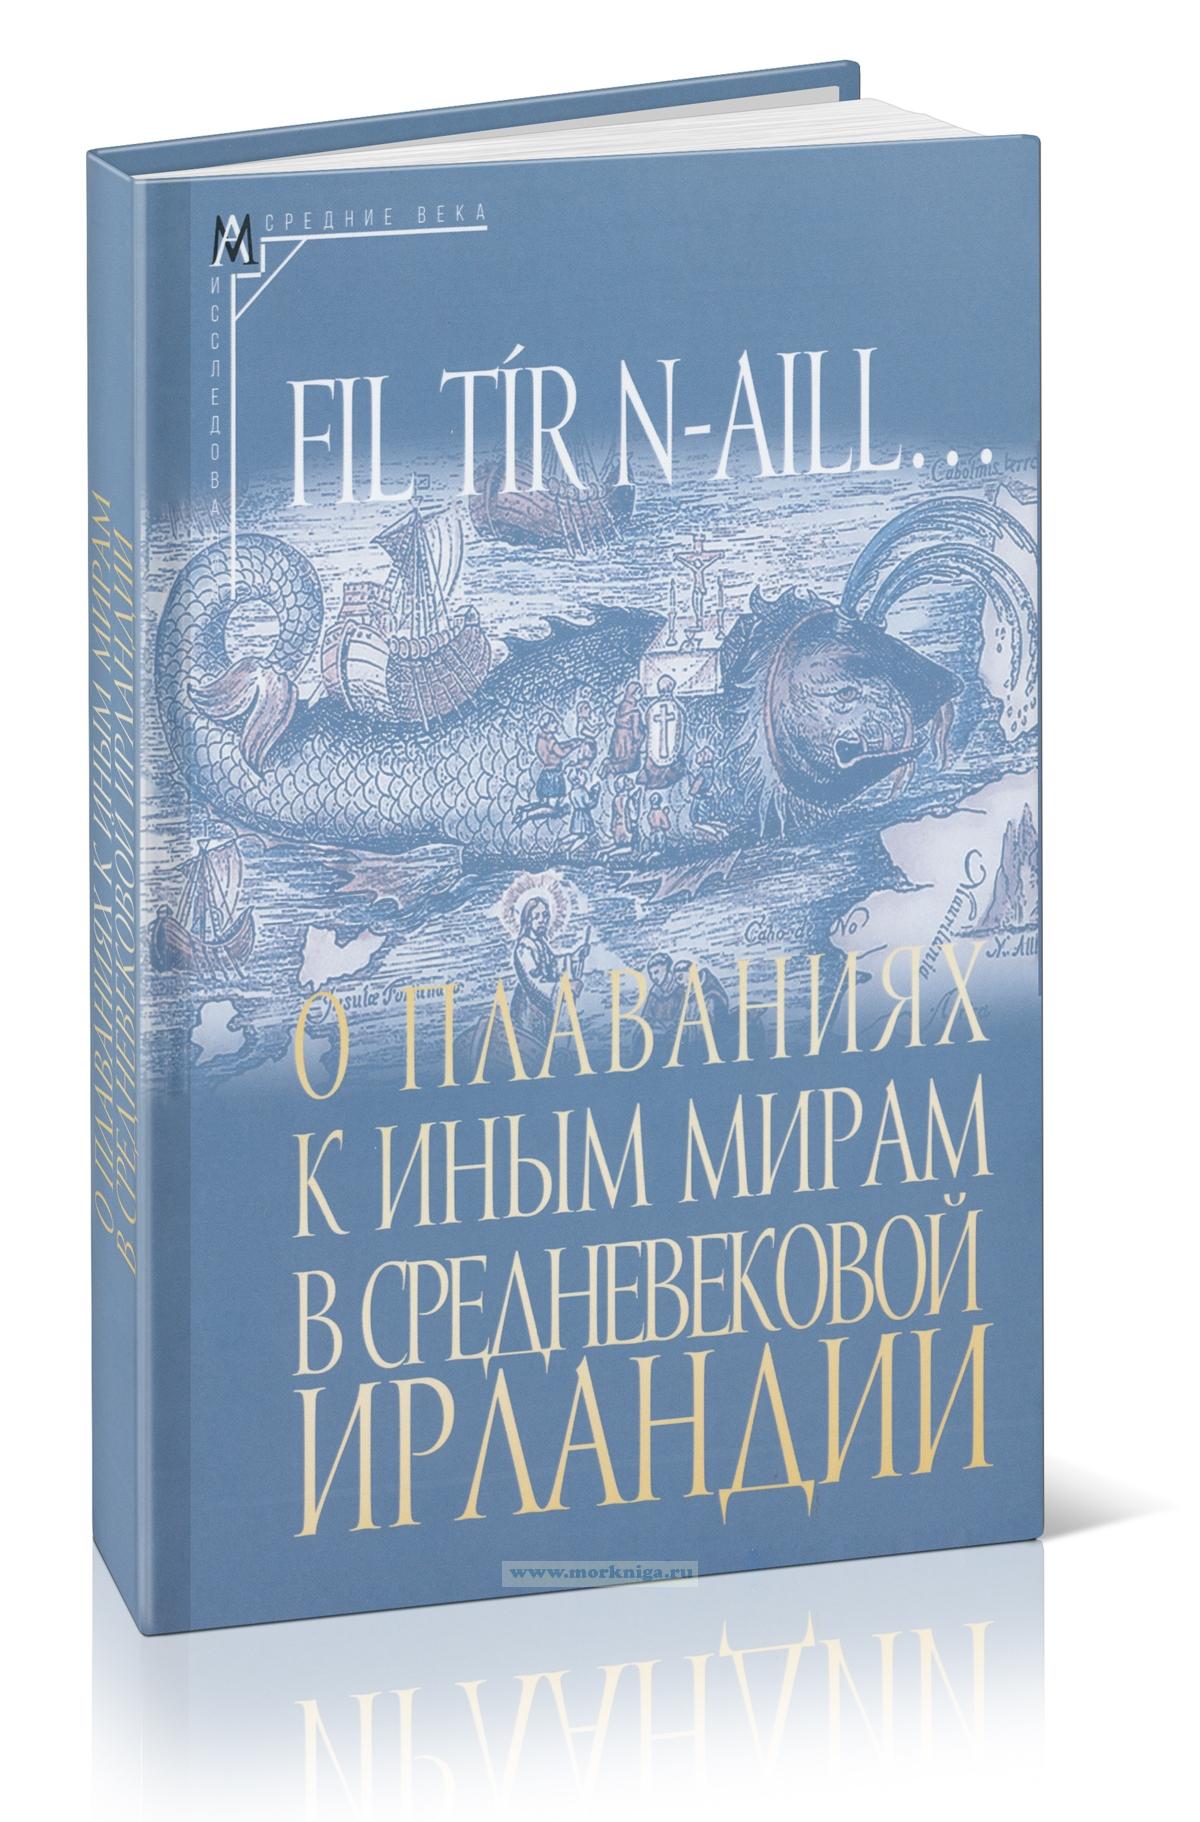 Fil tir n-aill... О плаваниях к иным мирам в средневековой Ирландии: исследования и тексты